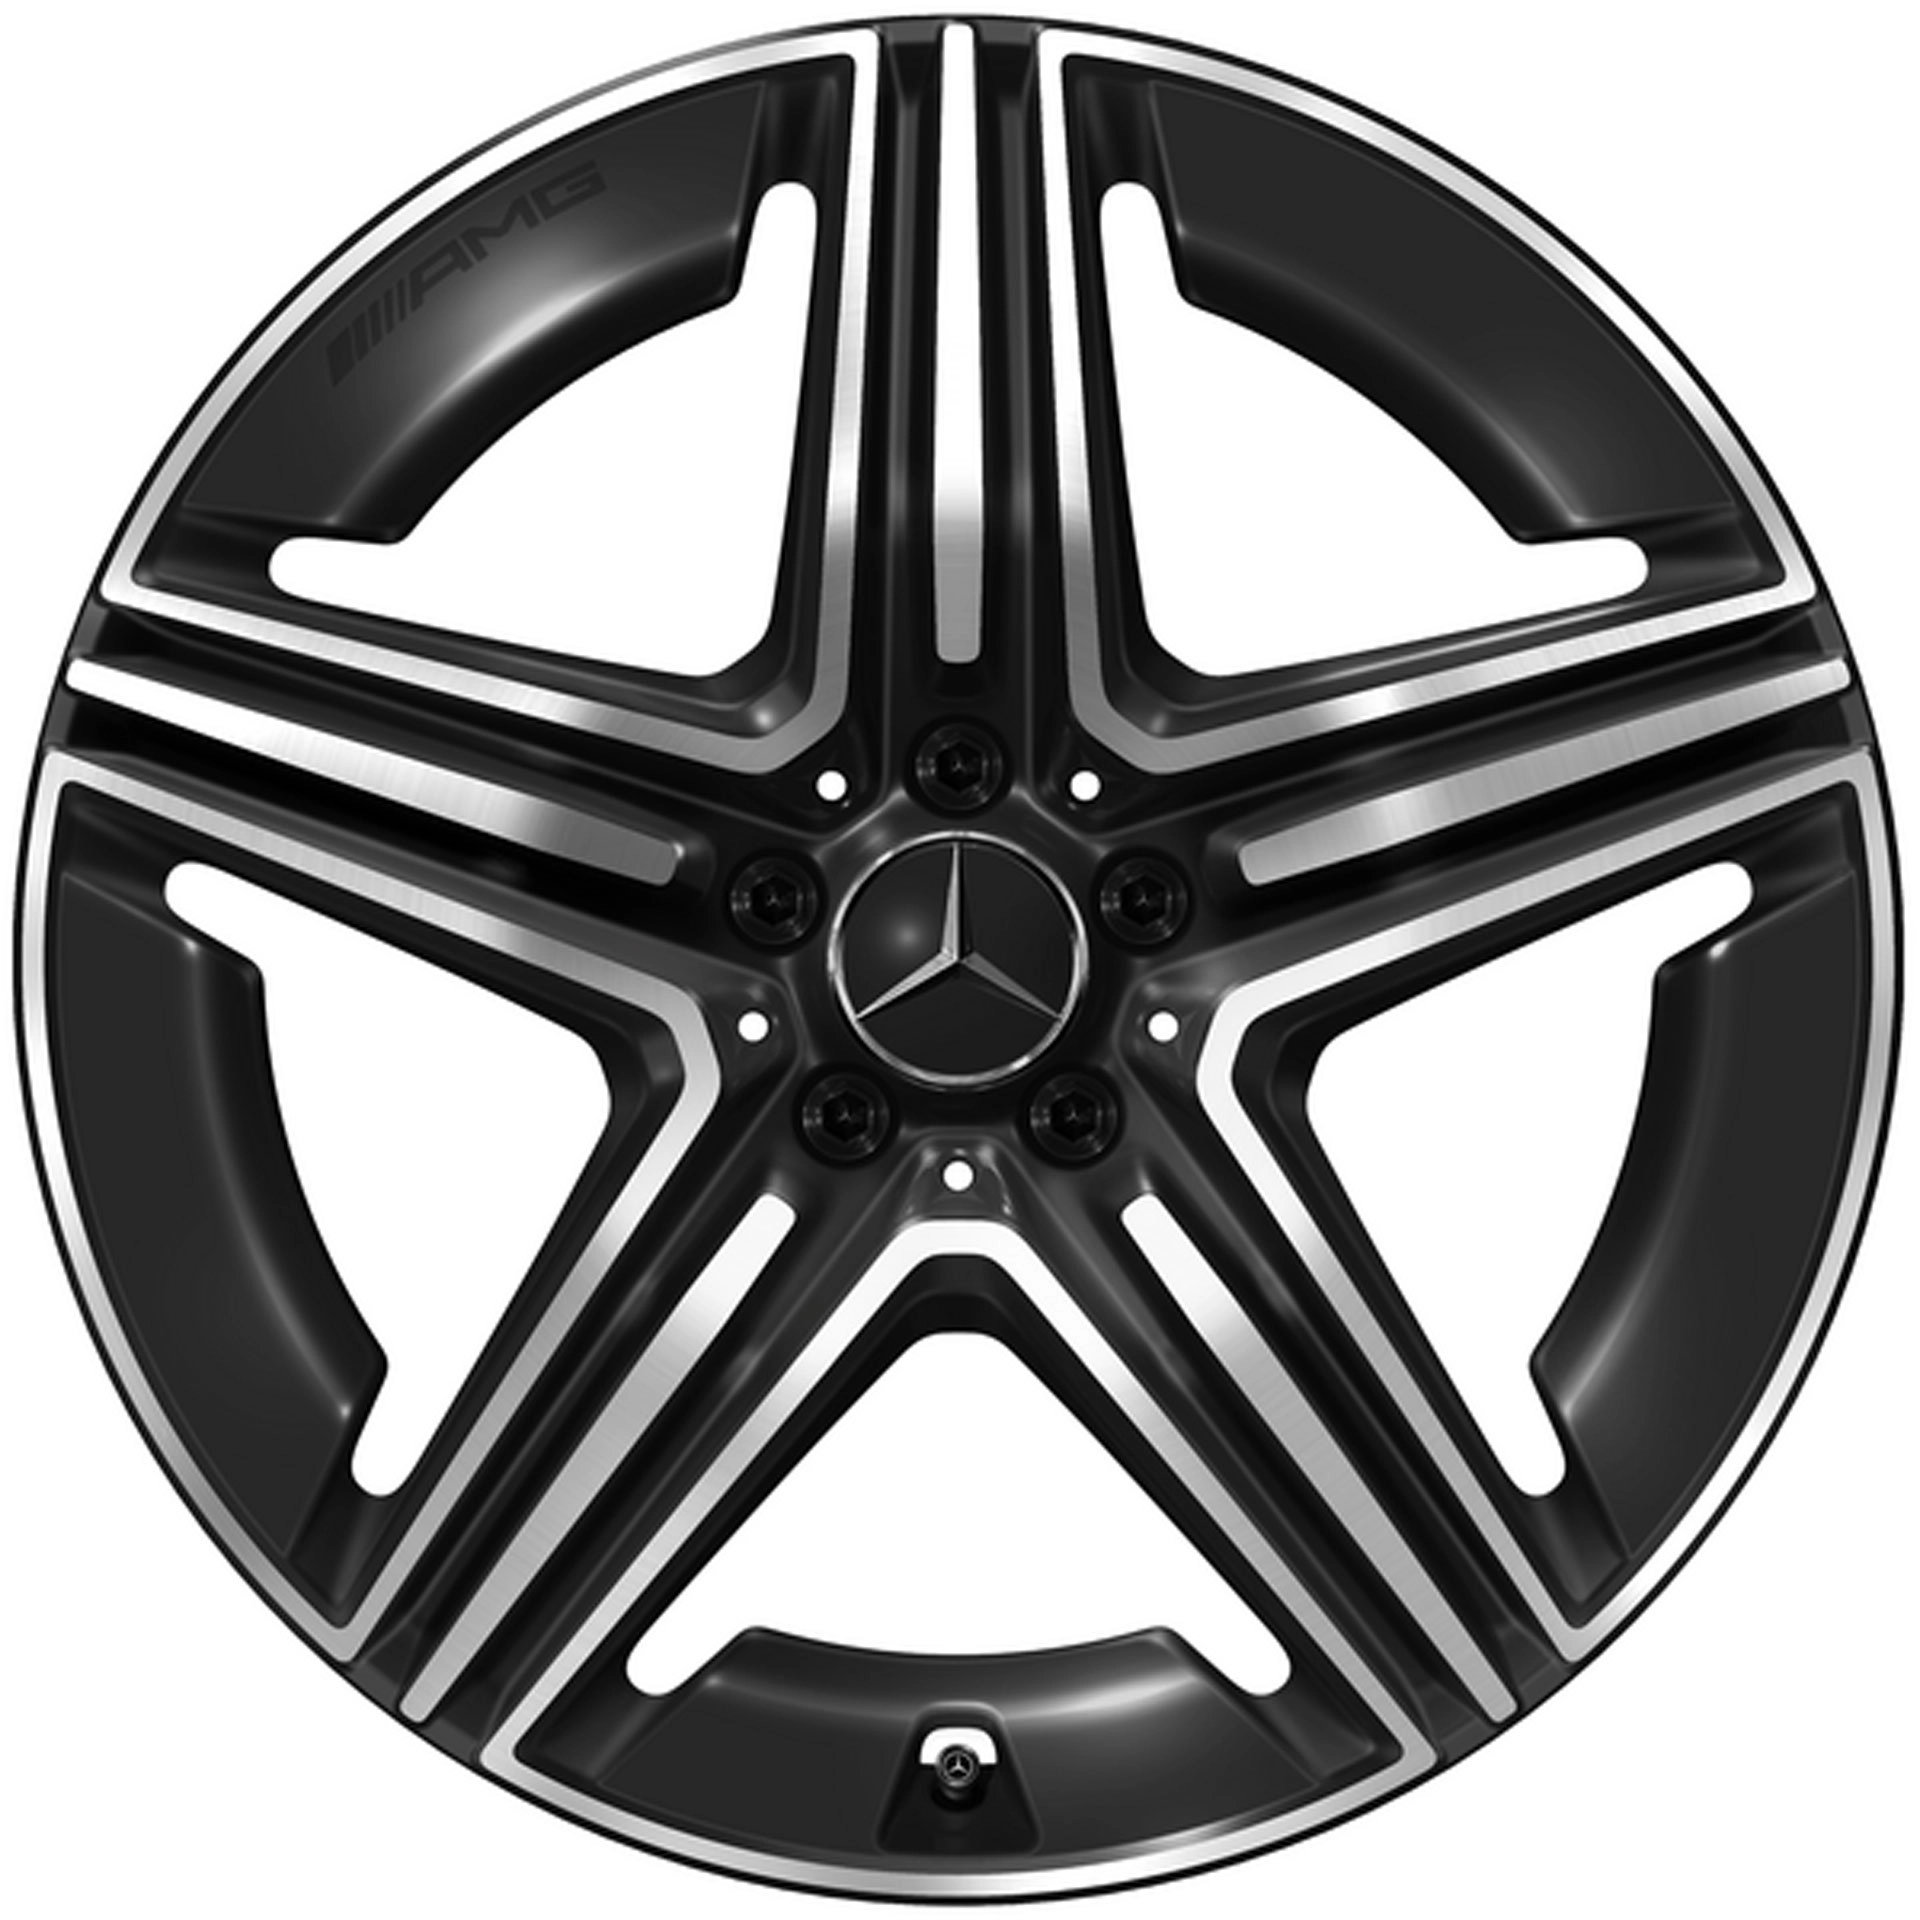 Mercedes-AMG 5-Doppelspeichen-Rad 20 Zoll Leichtmetallfelge GLC X254 schwarz glanzgedreht A25440106007X23